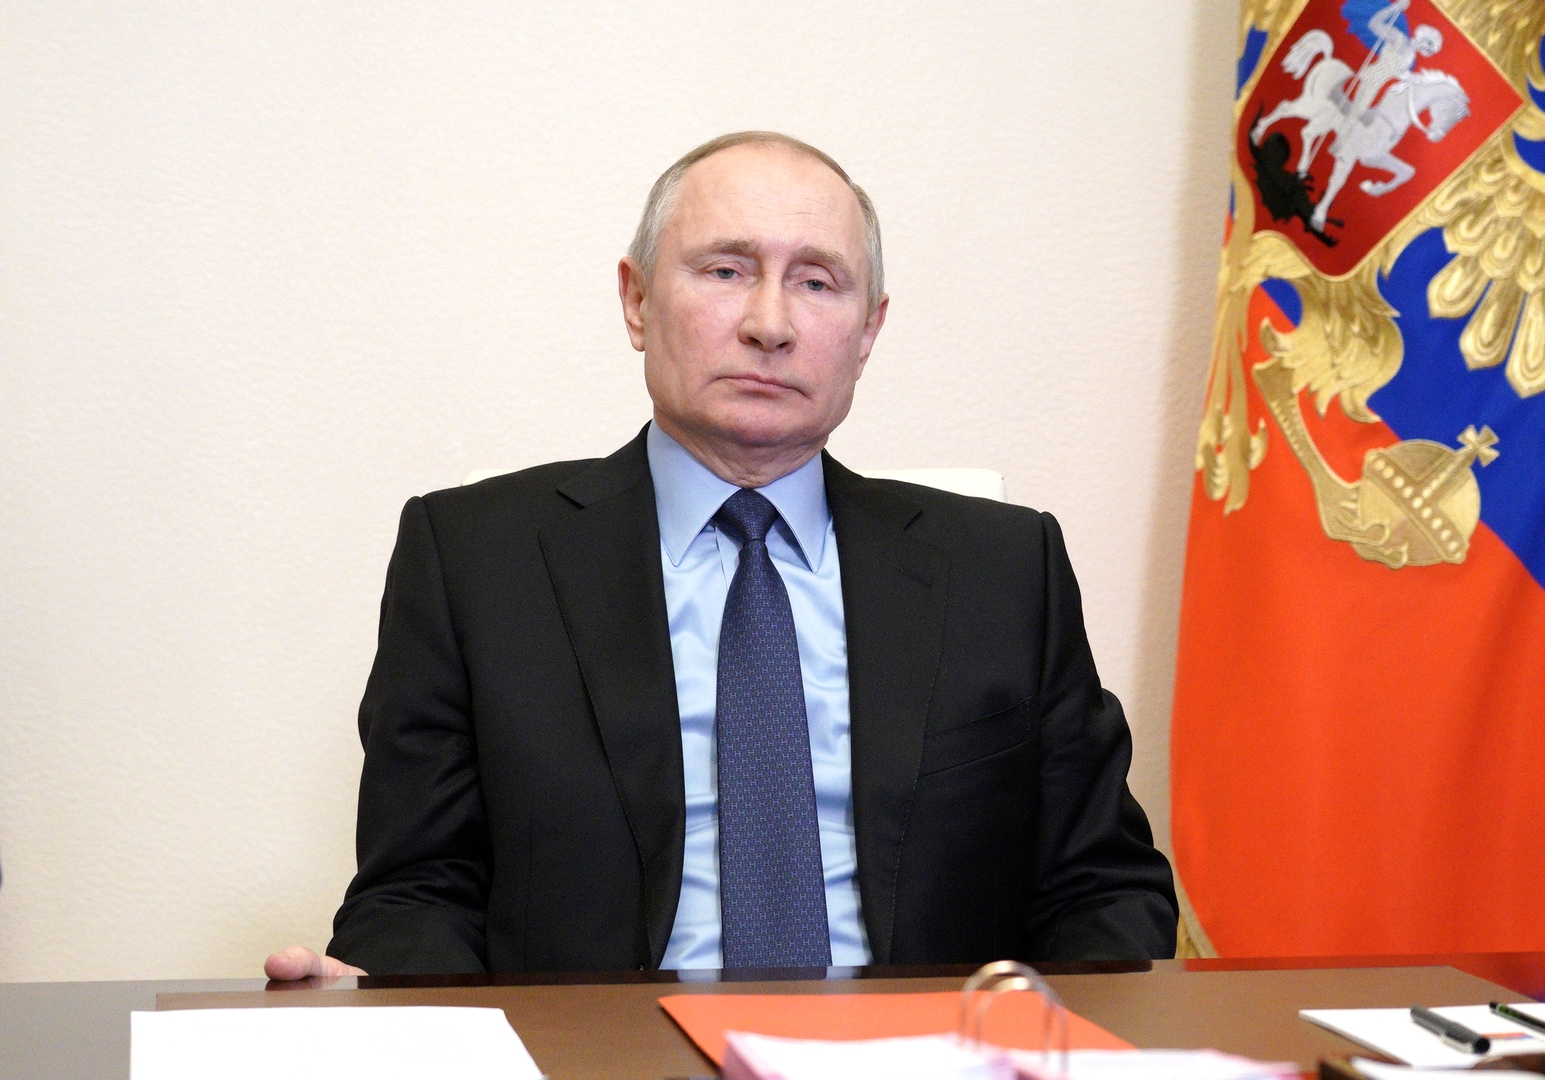 بوتين يخطط لحضور منتدى بطرسبورغ الاقتصادي شخصيا